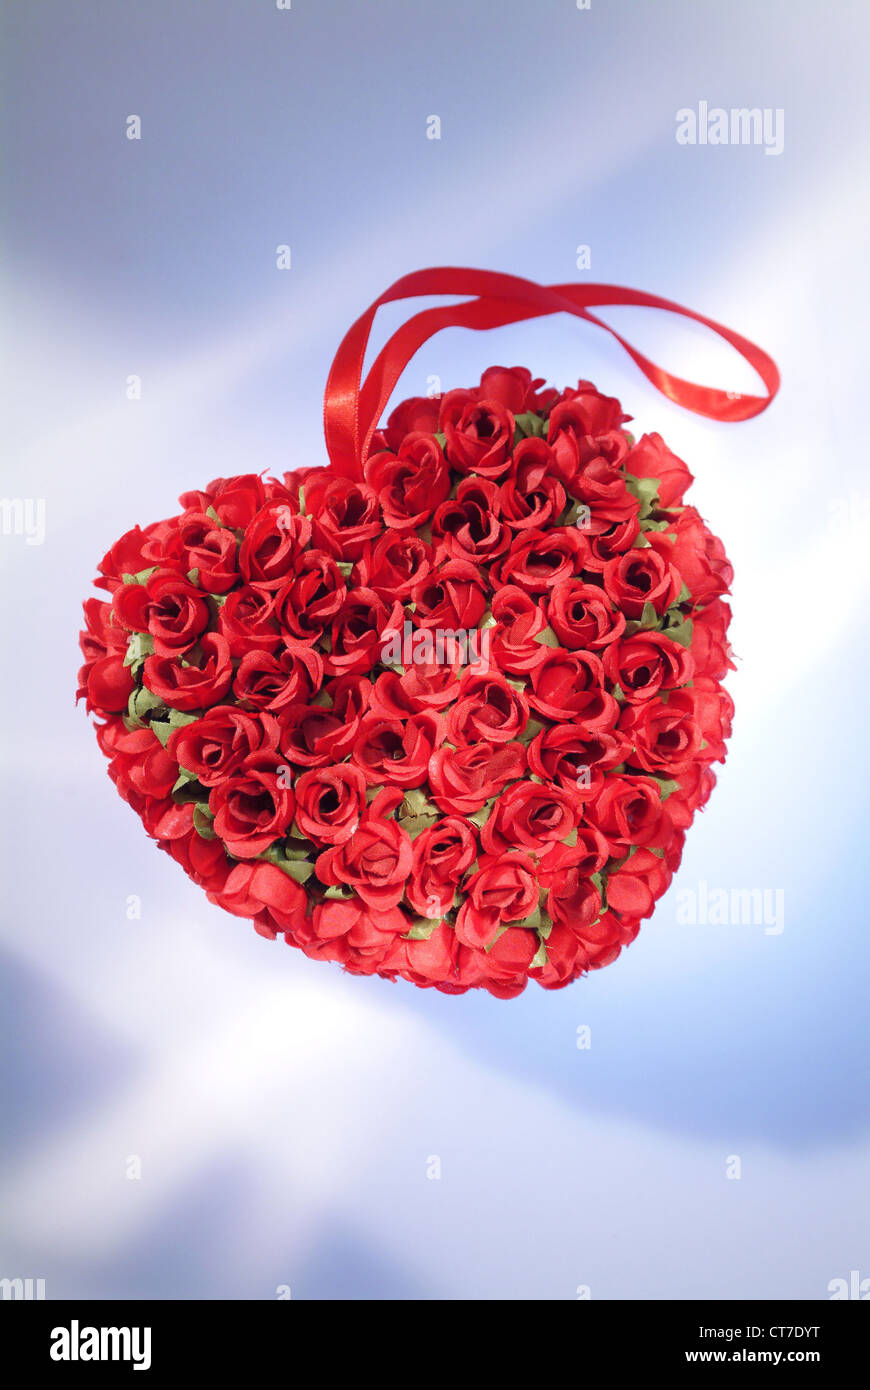 Forma de corazón hecha con pétalos de rosas rojas naturales concepto mínimo  de amor o día de la madre idea romántica